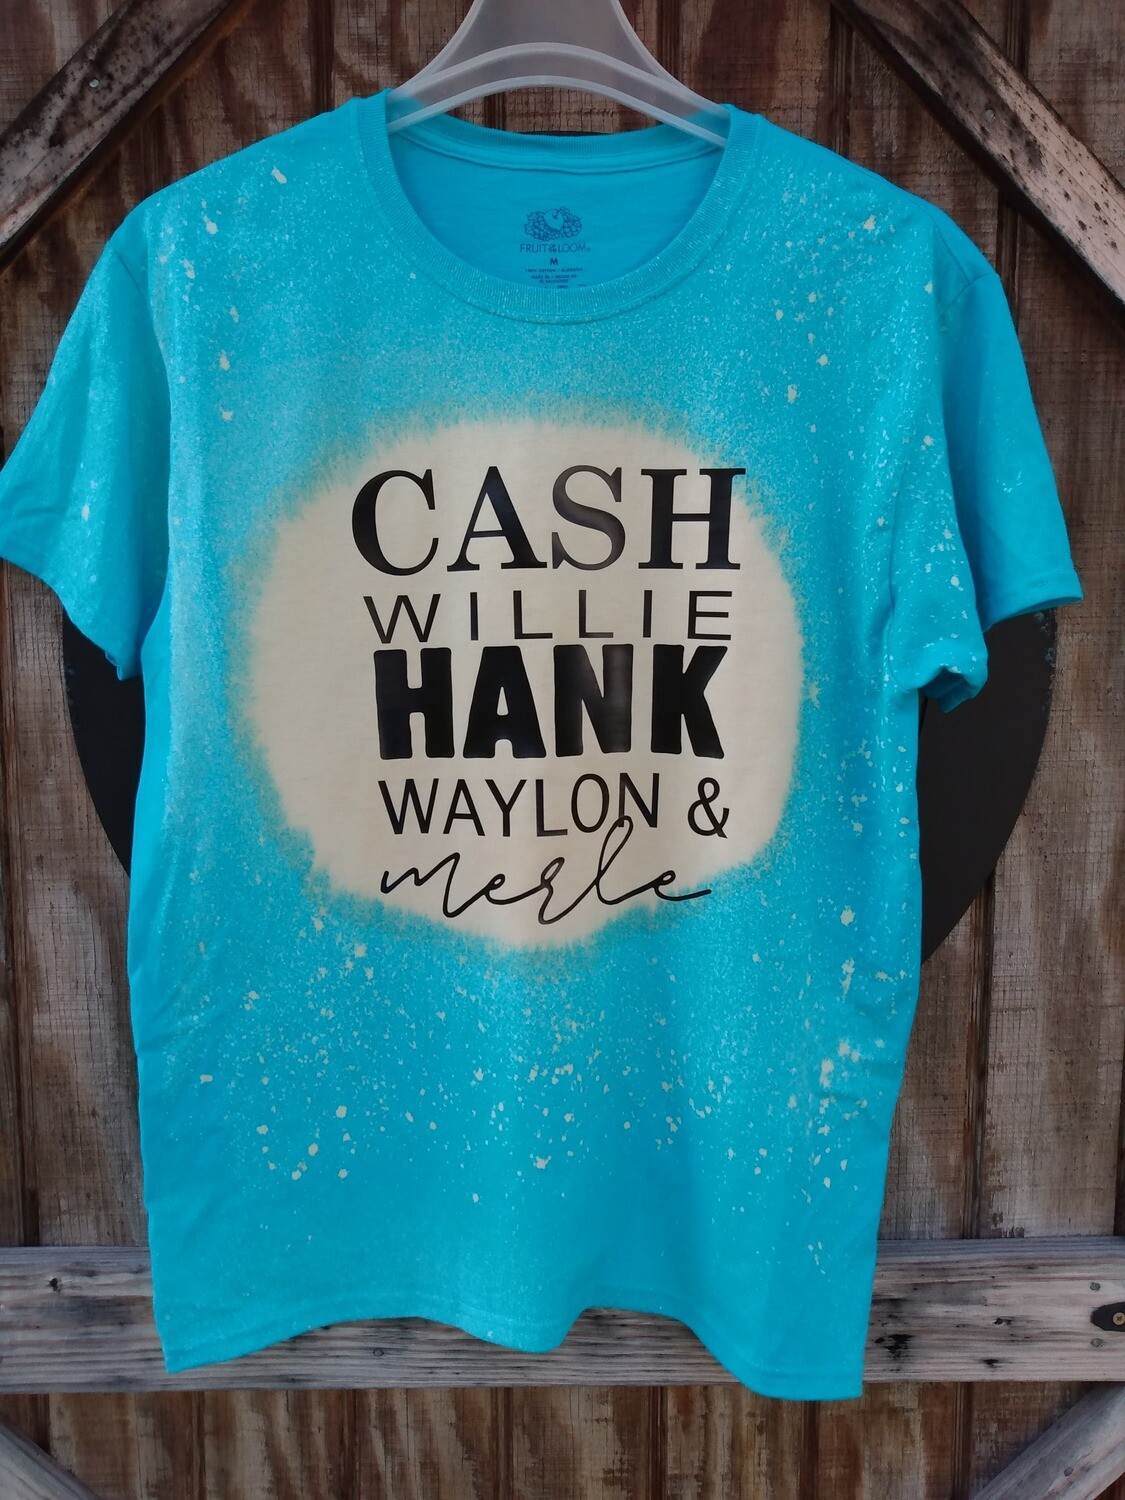 Cash Willie Hank Waylon Merle